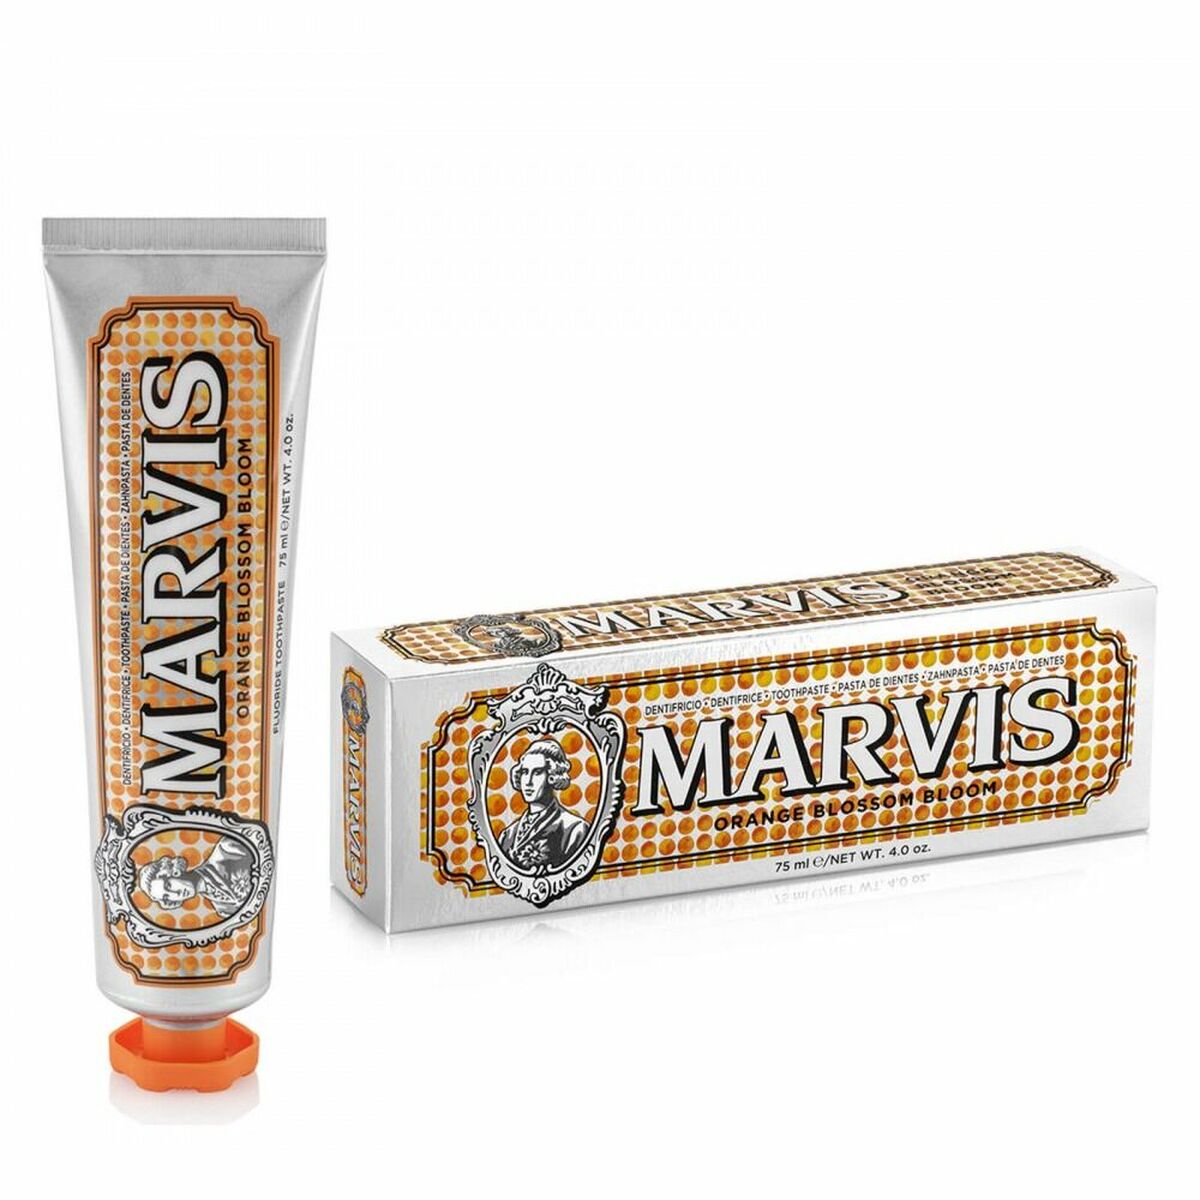 Toothpaste Marvis Orange Blossom (75 ml)